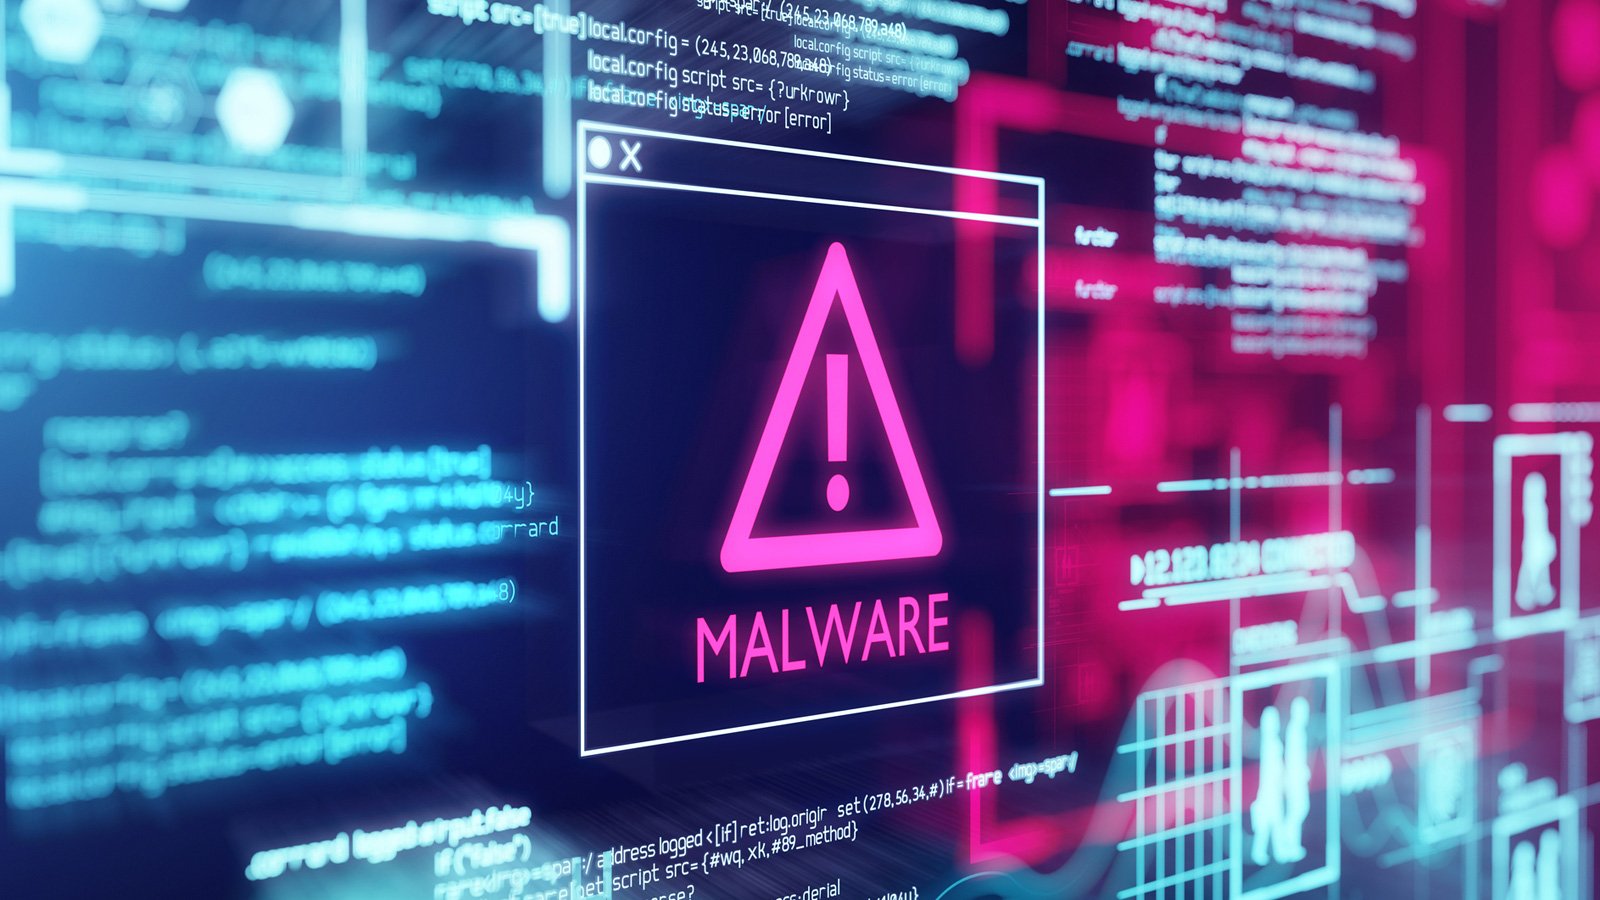 Le malware Ursnif passe du vol de compte bancaire à l'accès initial